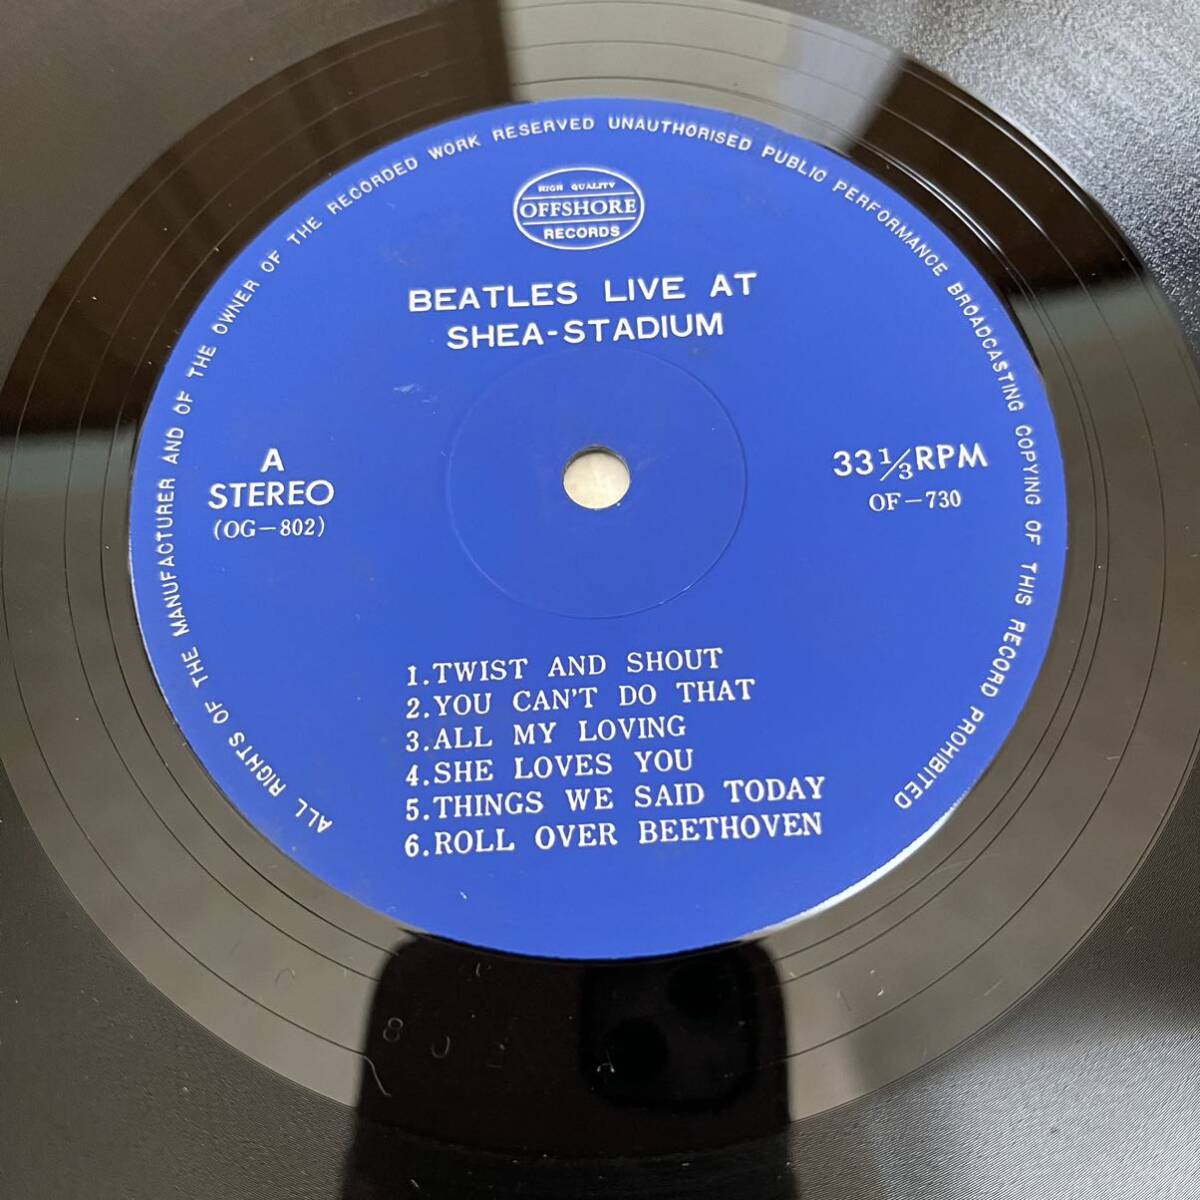 【ペラジャケ】BEATLES LIVE AT SHEA STADIUM IN 1964 ビートルズ / LP レコード / OG802 OF-730 / 洋楽ロック /_画像7